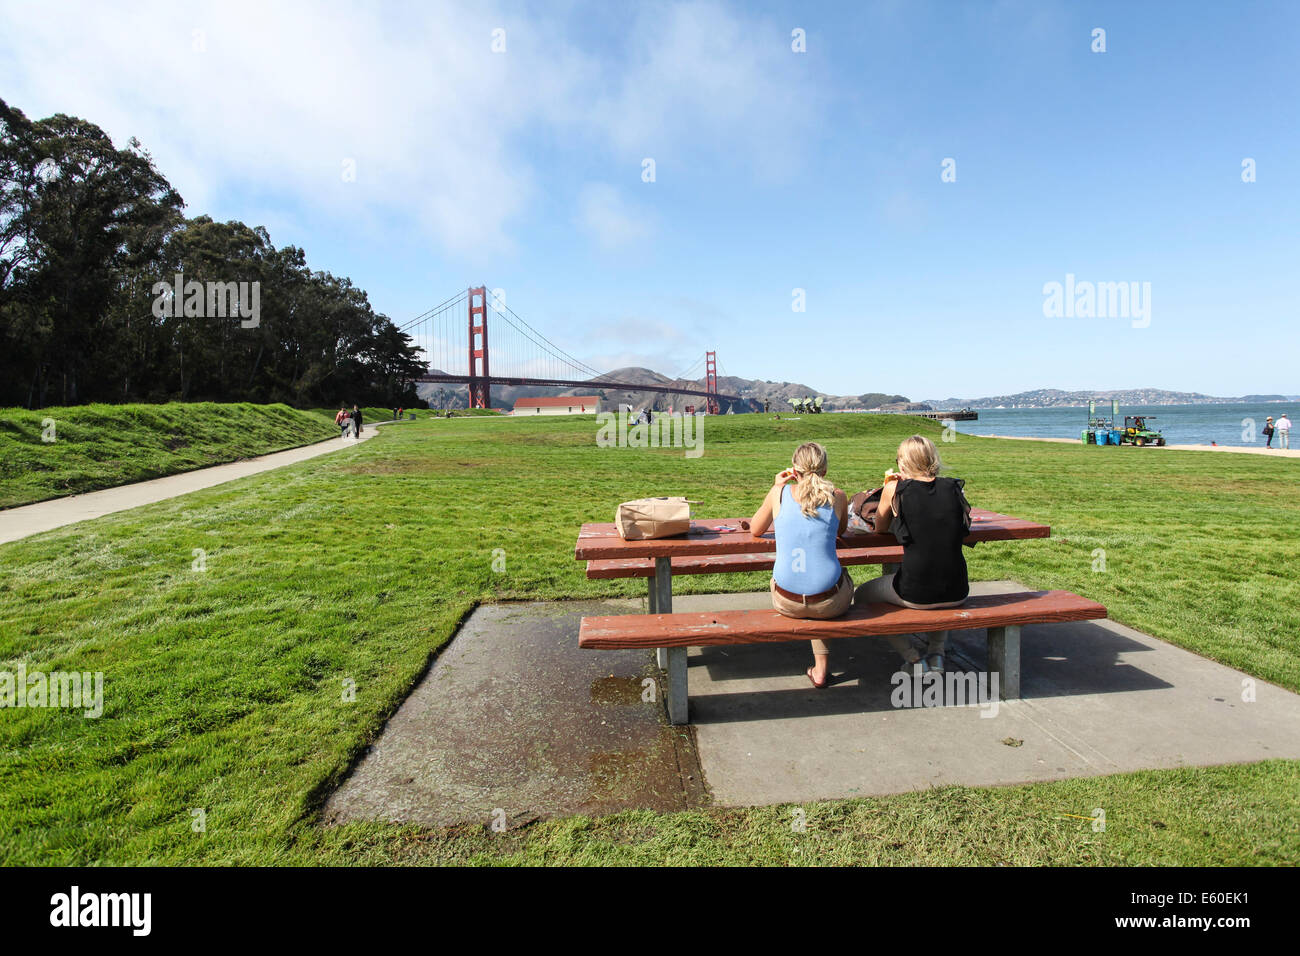 Presidio und Crissy Fields in der Golden Gate National Recreation Area in San Francisco Kalifornien Amerika Stockfoto